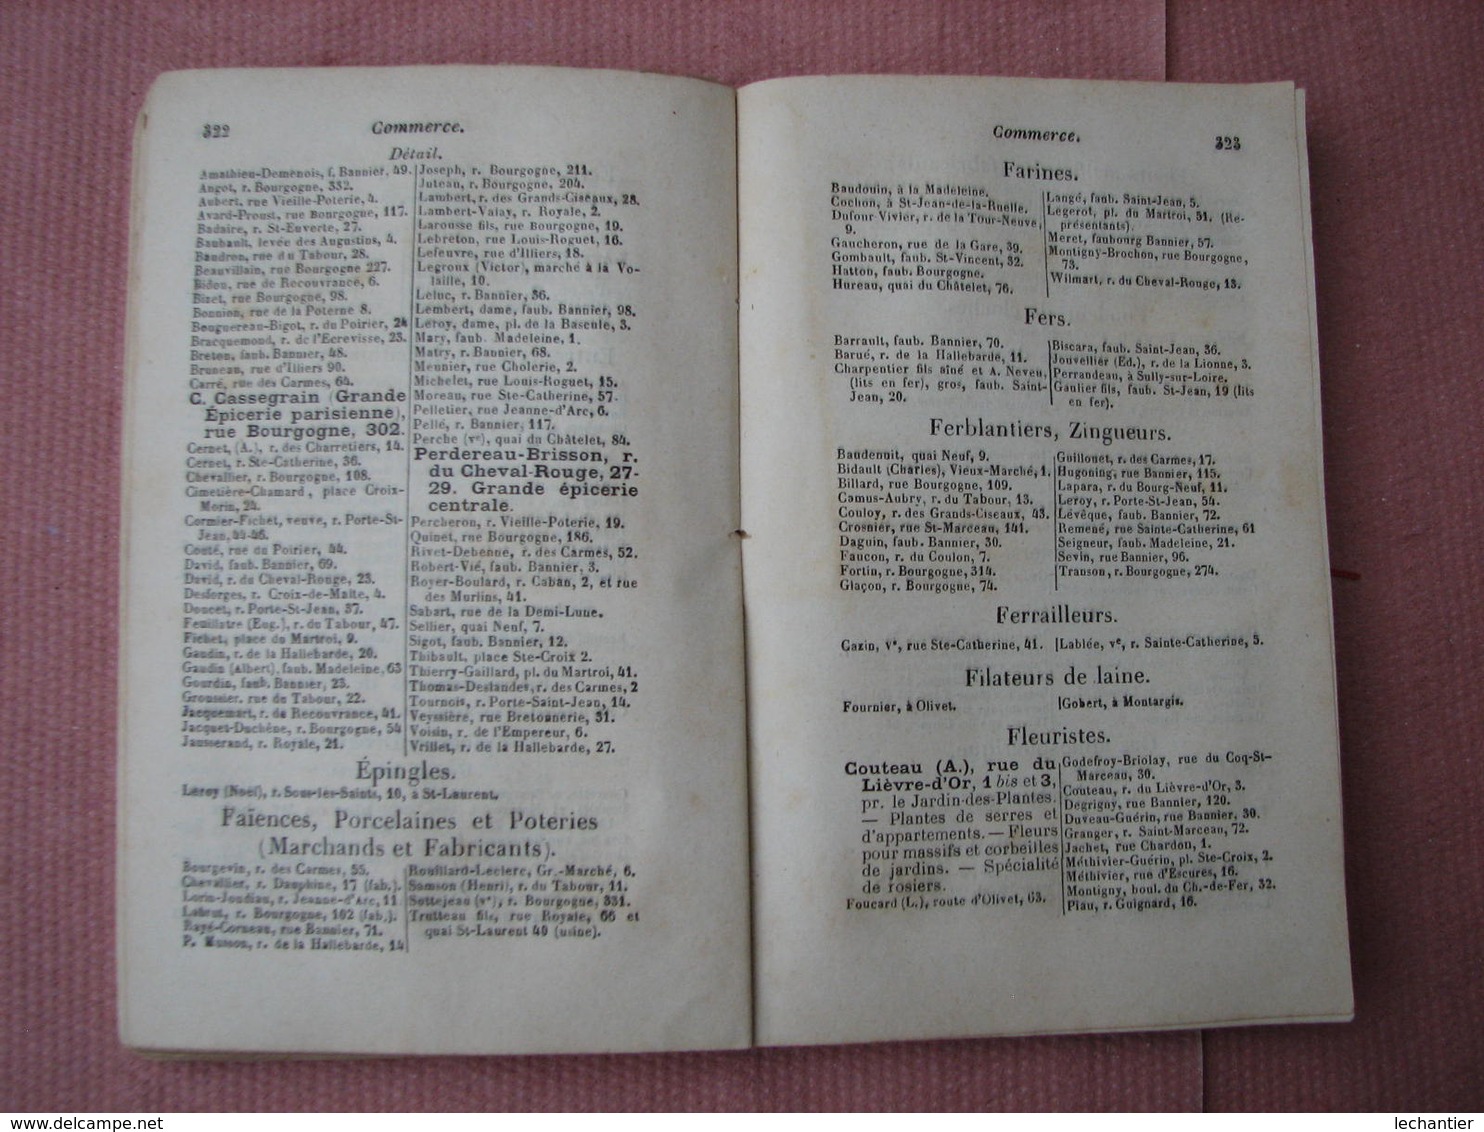 Almanach du LOIRET 1886 "Etrennes Orléannaises et Annuairedu Loiret reunis